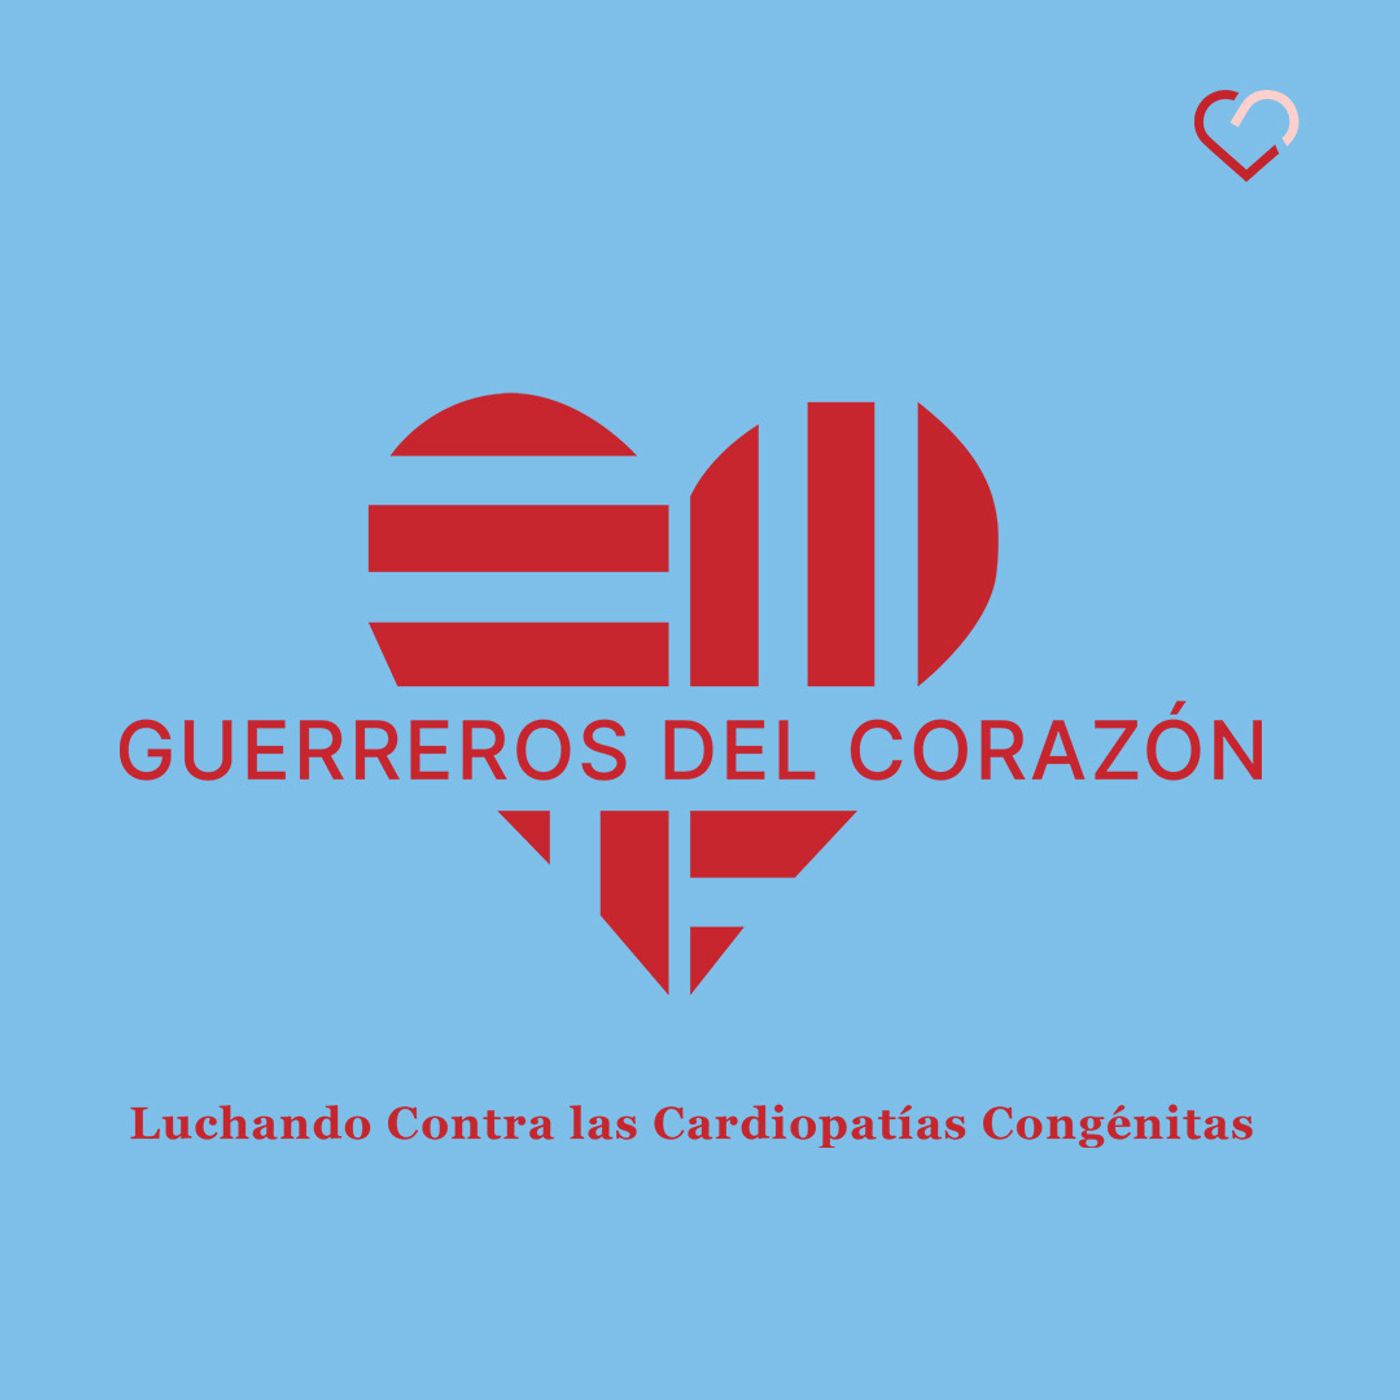 Viviana Ordoñez: Cardiopatías congénitas, De cara al duelo